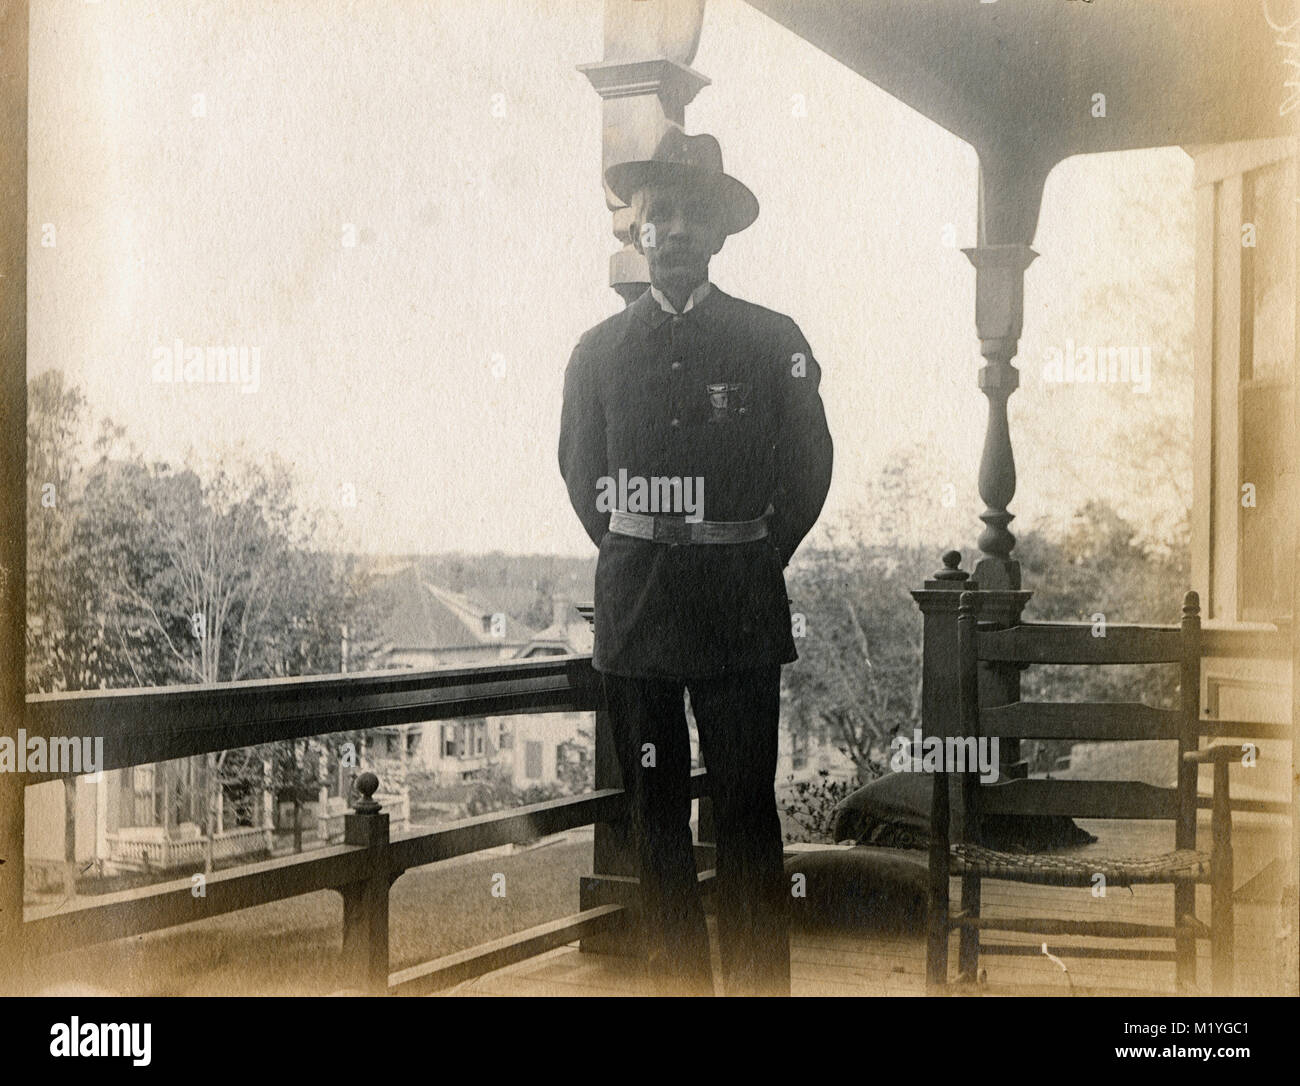 Antique circa 1905 fotografia, anziano gentiluomo sul suo portico in uniforme militare con badge GAR. Posizione sconosciuta, probabilmente la Nuova Inghilterra, Stati Uniti d'America. Ho più foto di questa famiglia a Riggsville (ora Robinhood), Maine in Sagadahoc County, Stati Uniti d'America. Foto Stock